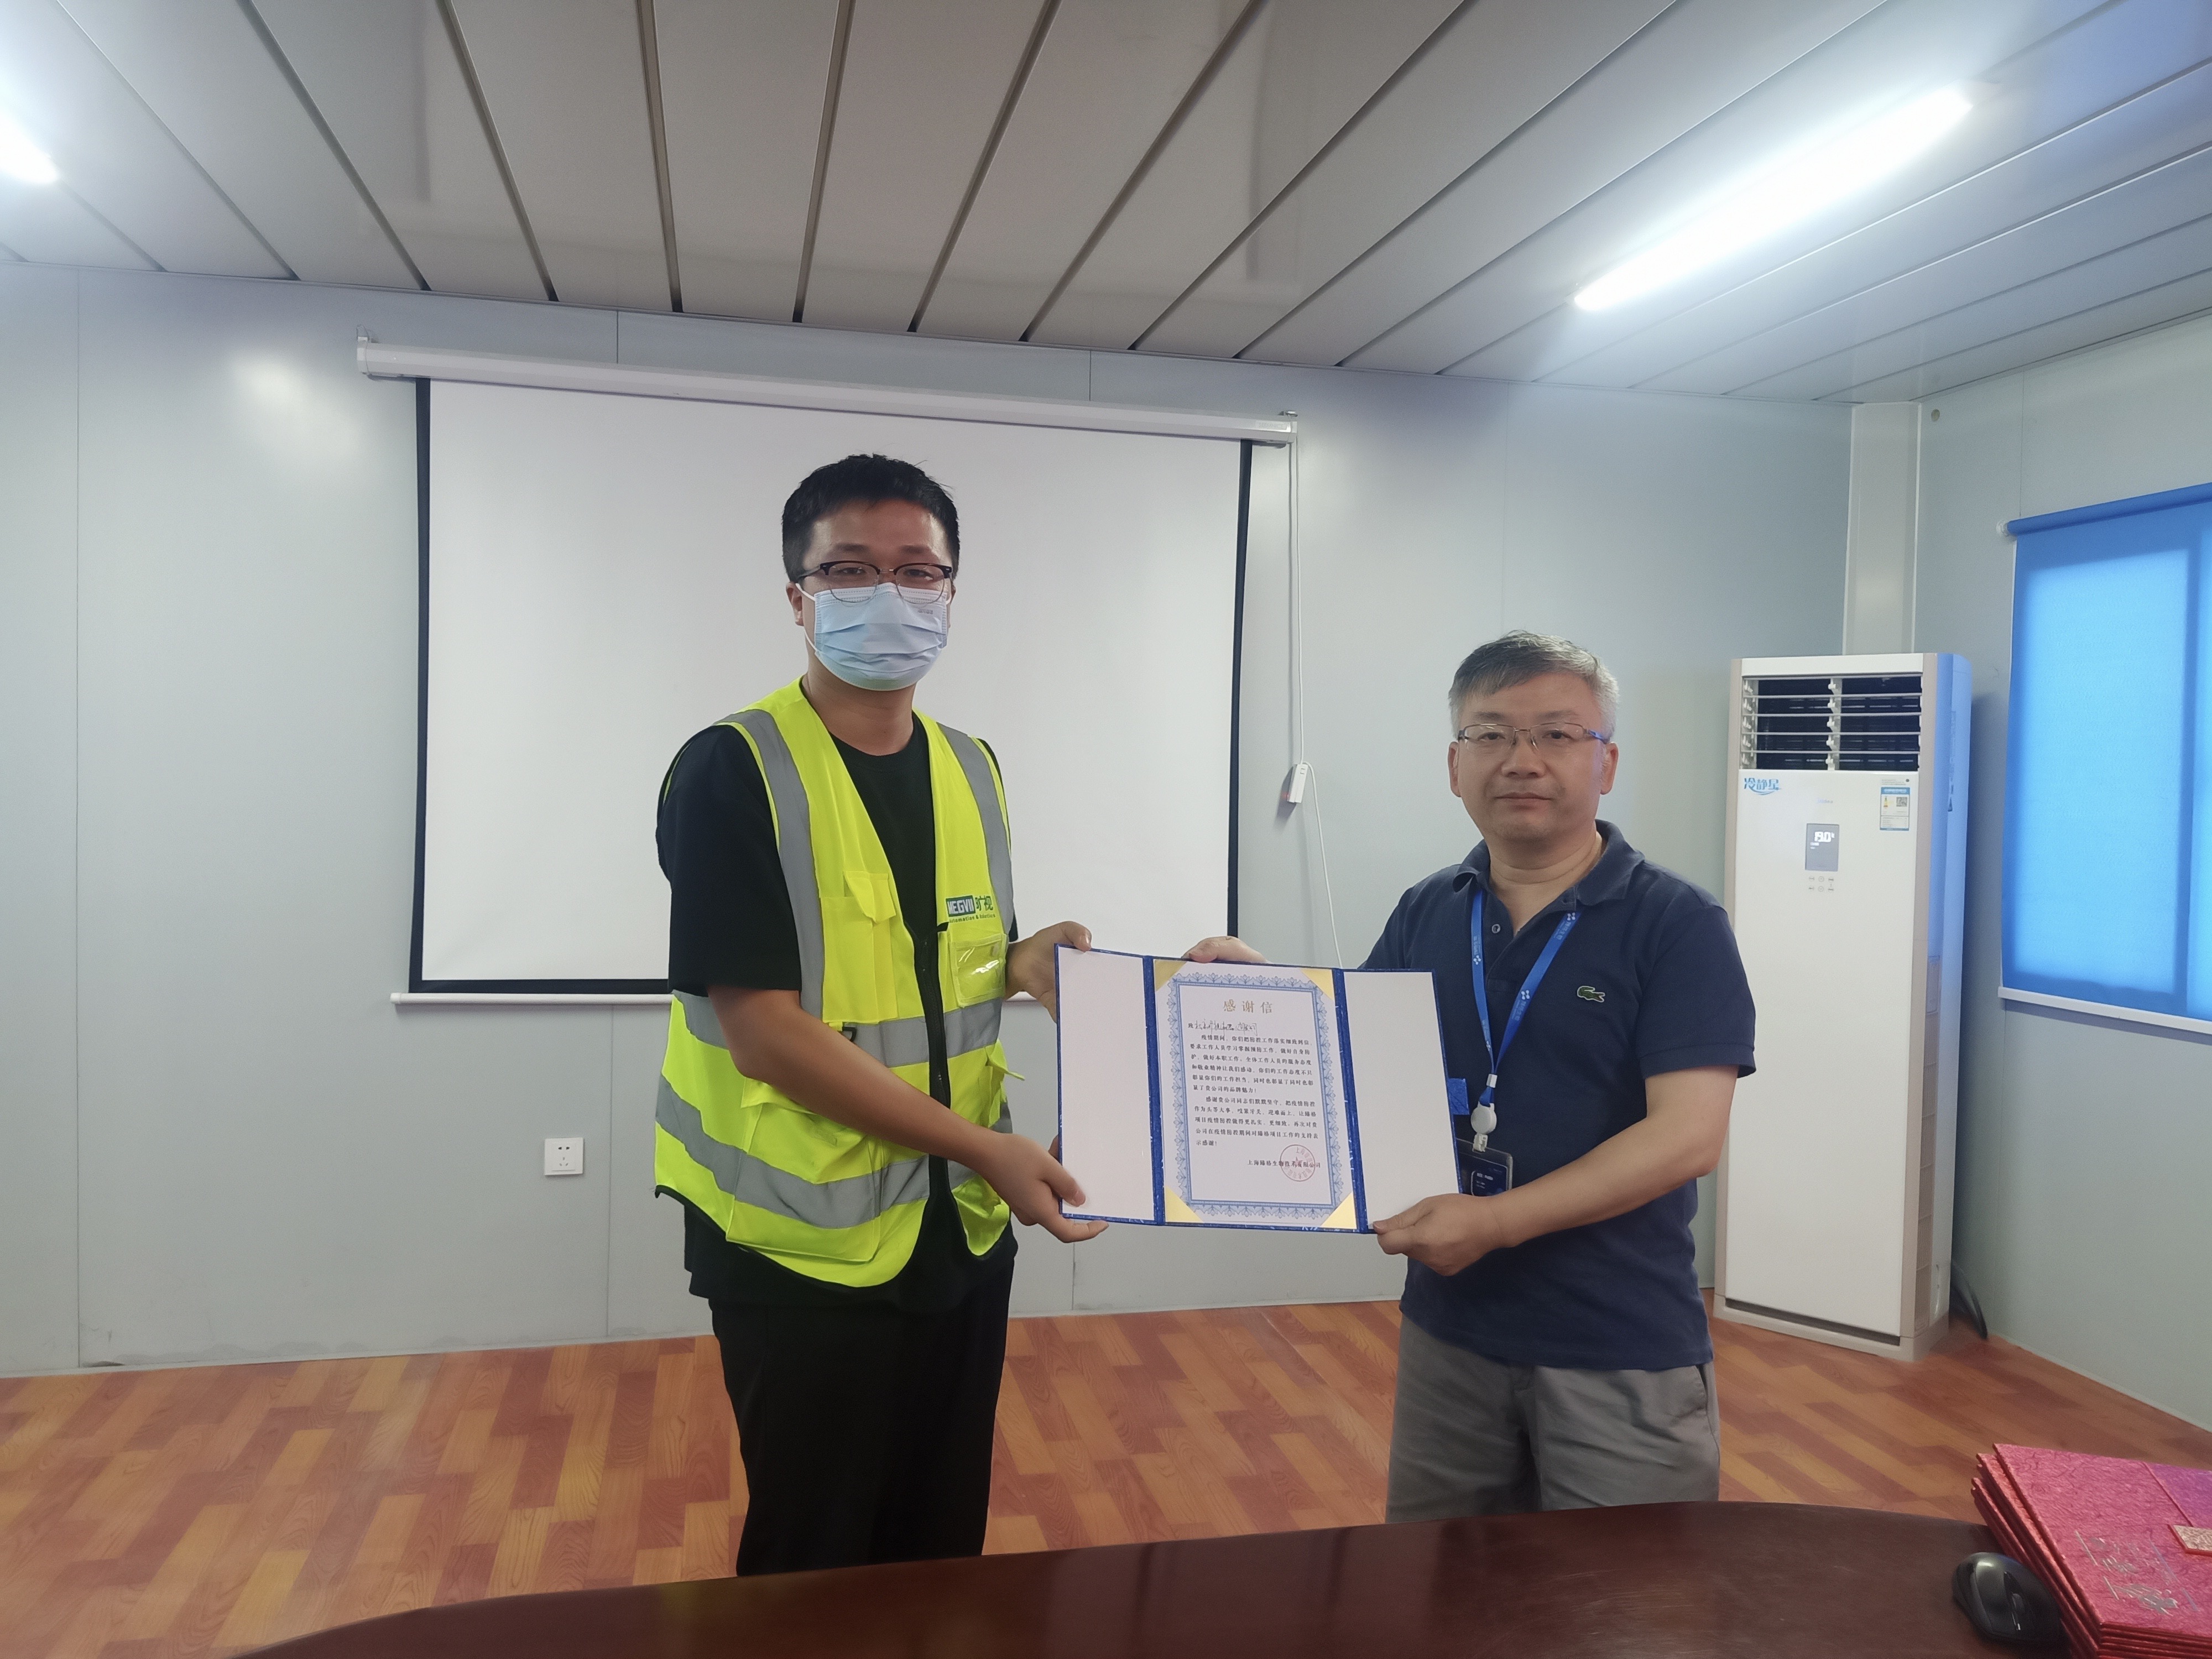 疫病の予防と対策に手を緩めることなく、プロジェクトの建設も止めない!  --メグビ物流事業が上海臻格バイオ社から感謝状を授与された